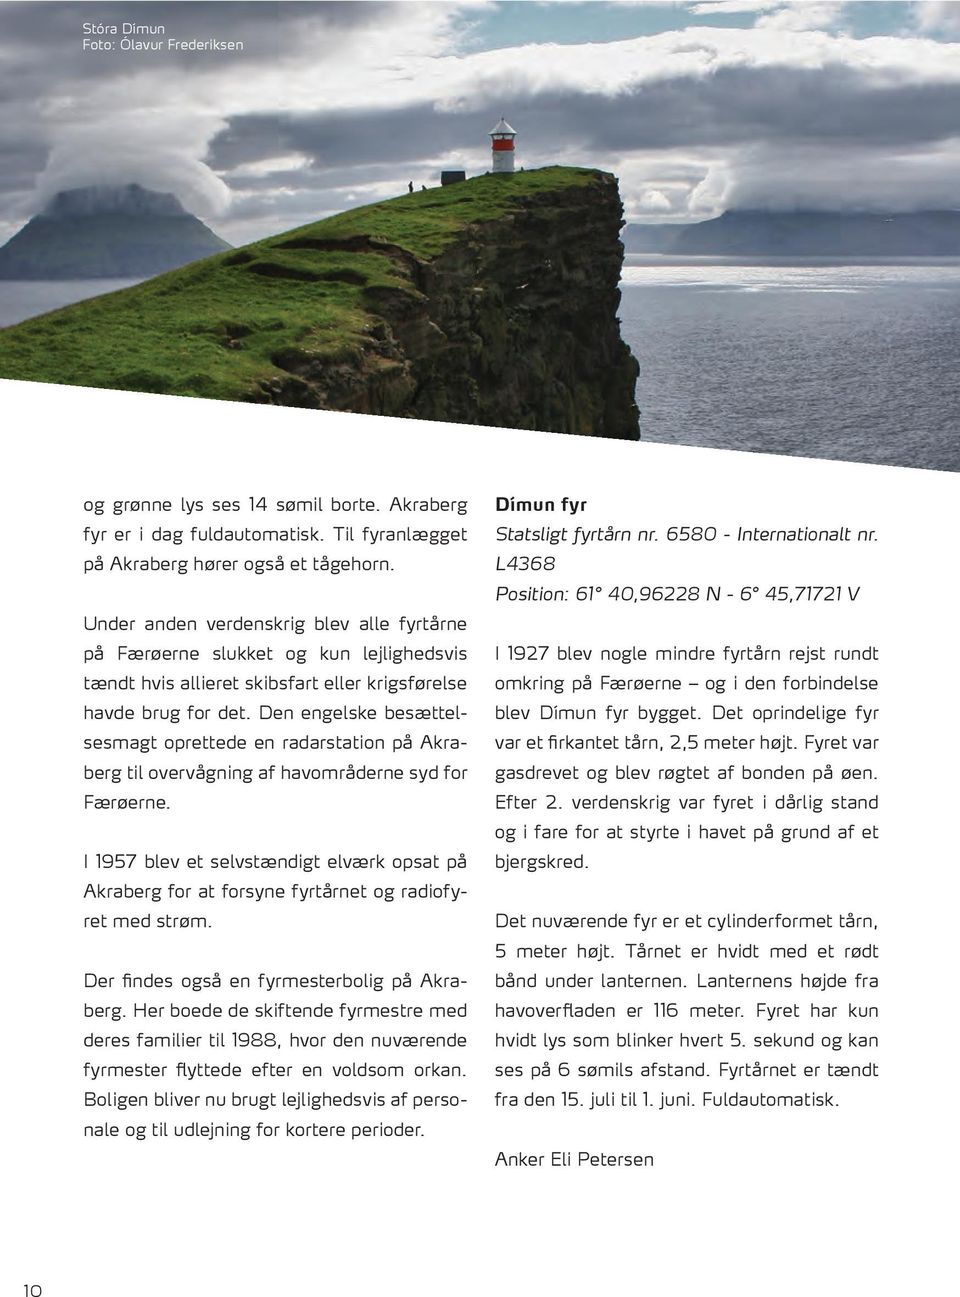 Den engelske besættelsesmagt oprettede en radarstation på Akraberg til overvågning af havområderne syd for Færøerne.